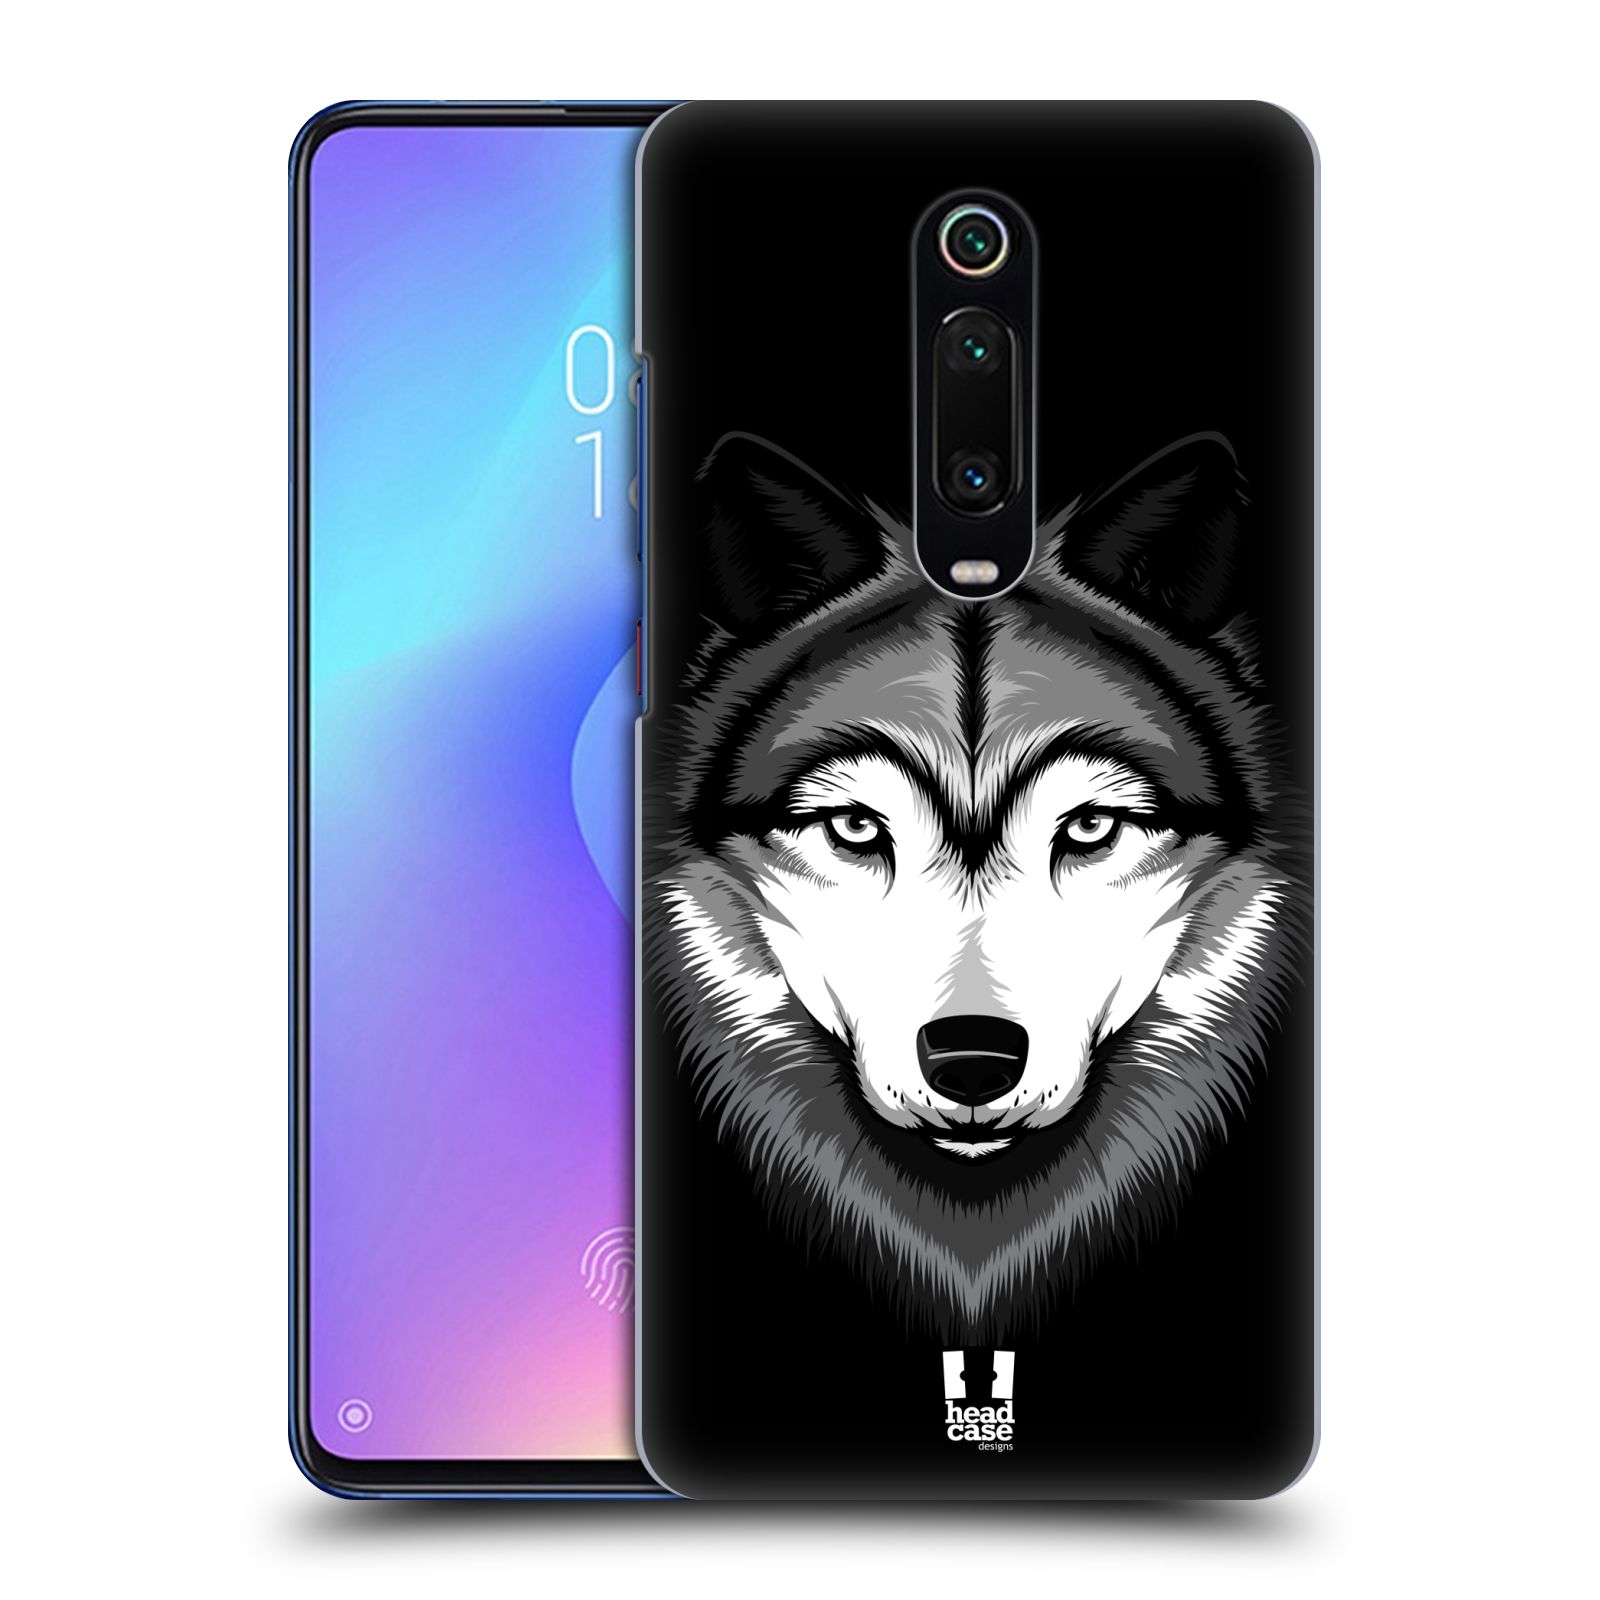 Plastový obal HEAD CASE na mobil Xiaomi Mi 9T vzor Zvíře kreslená tvář 2 vlk